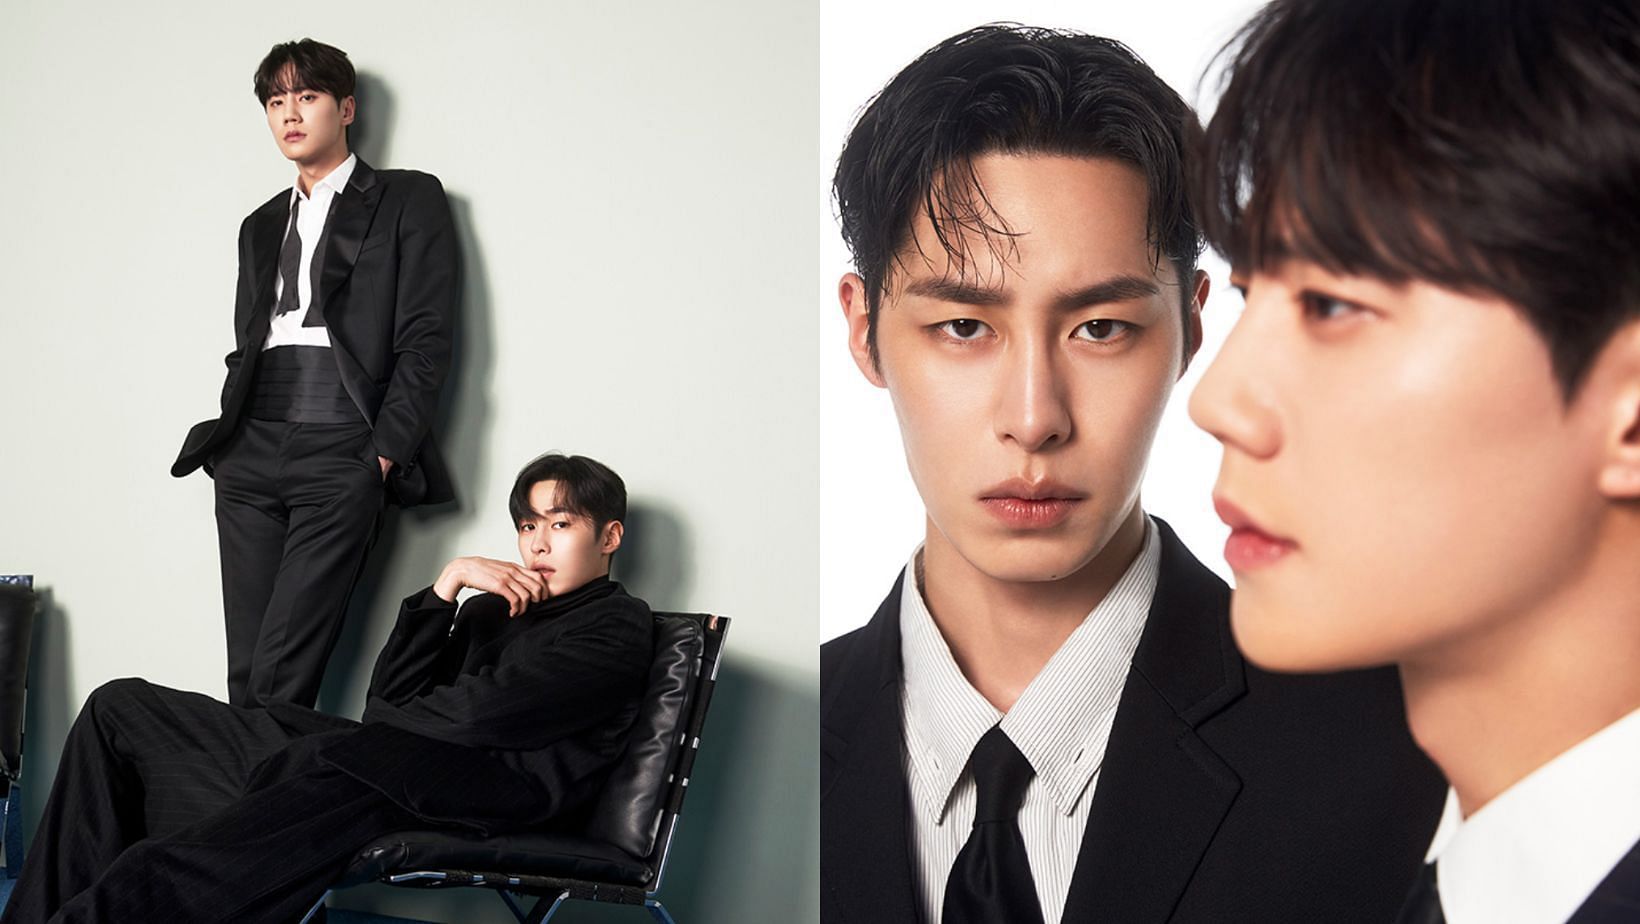 Lee Jae-Wook and Lee Jun-Young starring drama The Impossible Heir Season 1: Ending explained. (Images via Instagram/@disneypluskr)